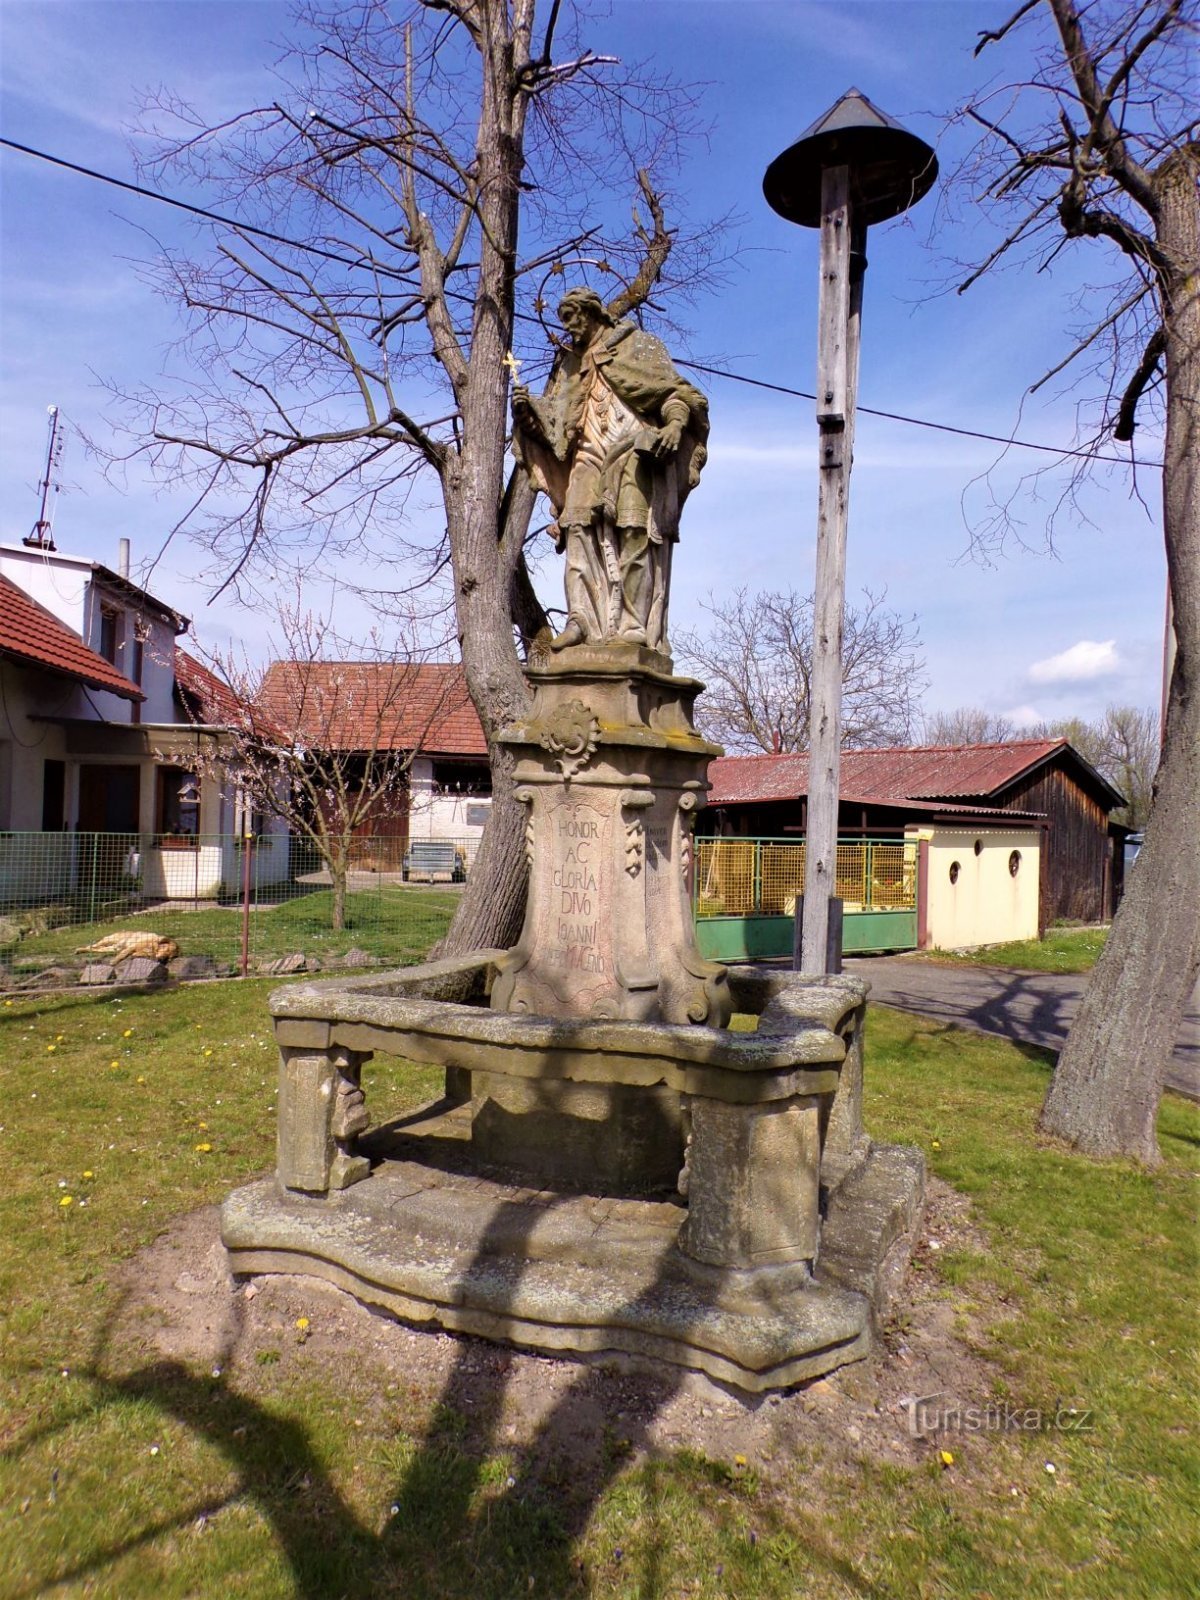 Staty av St. Johannes av Nepomuck med klocktornet (Šaplava, 30.4.2021/XNUMX/XNUMX)